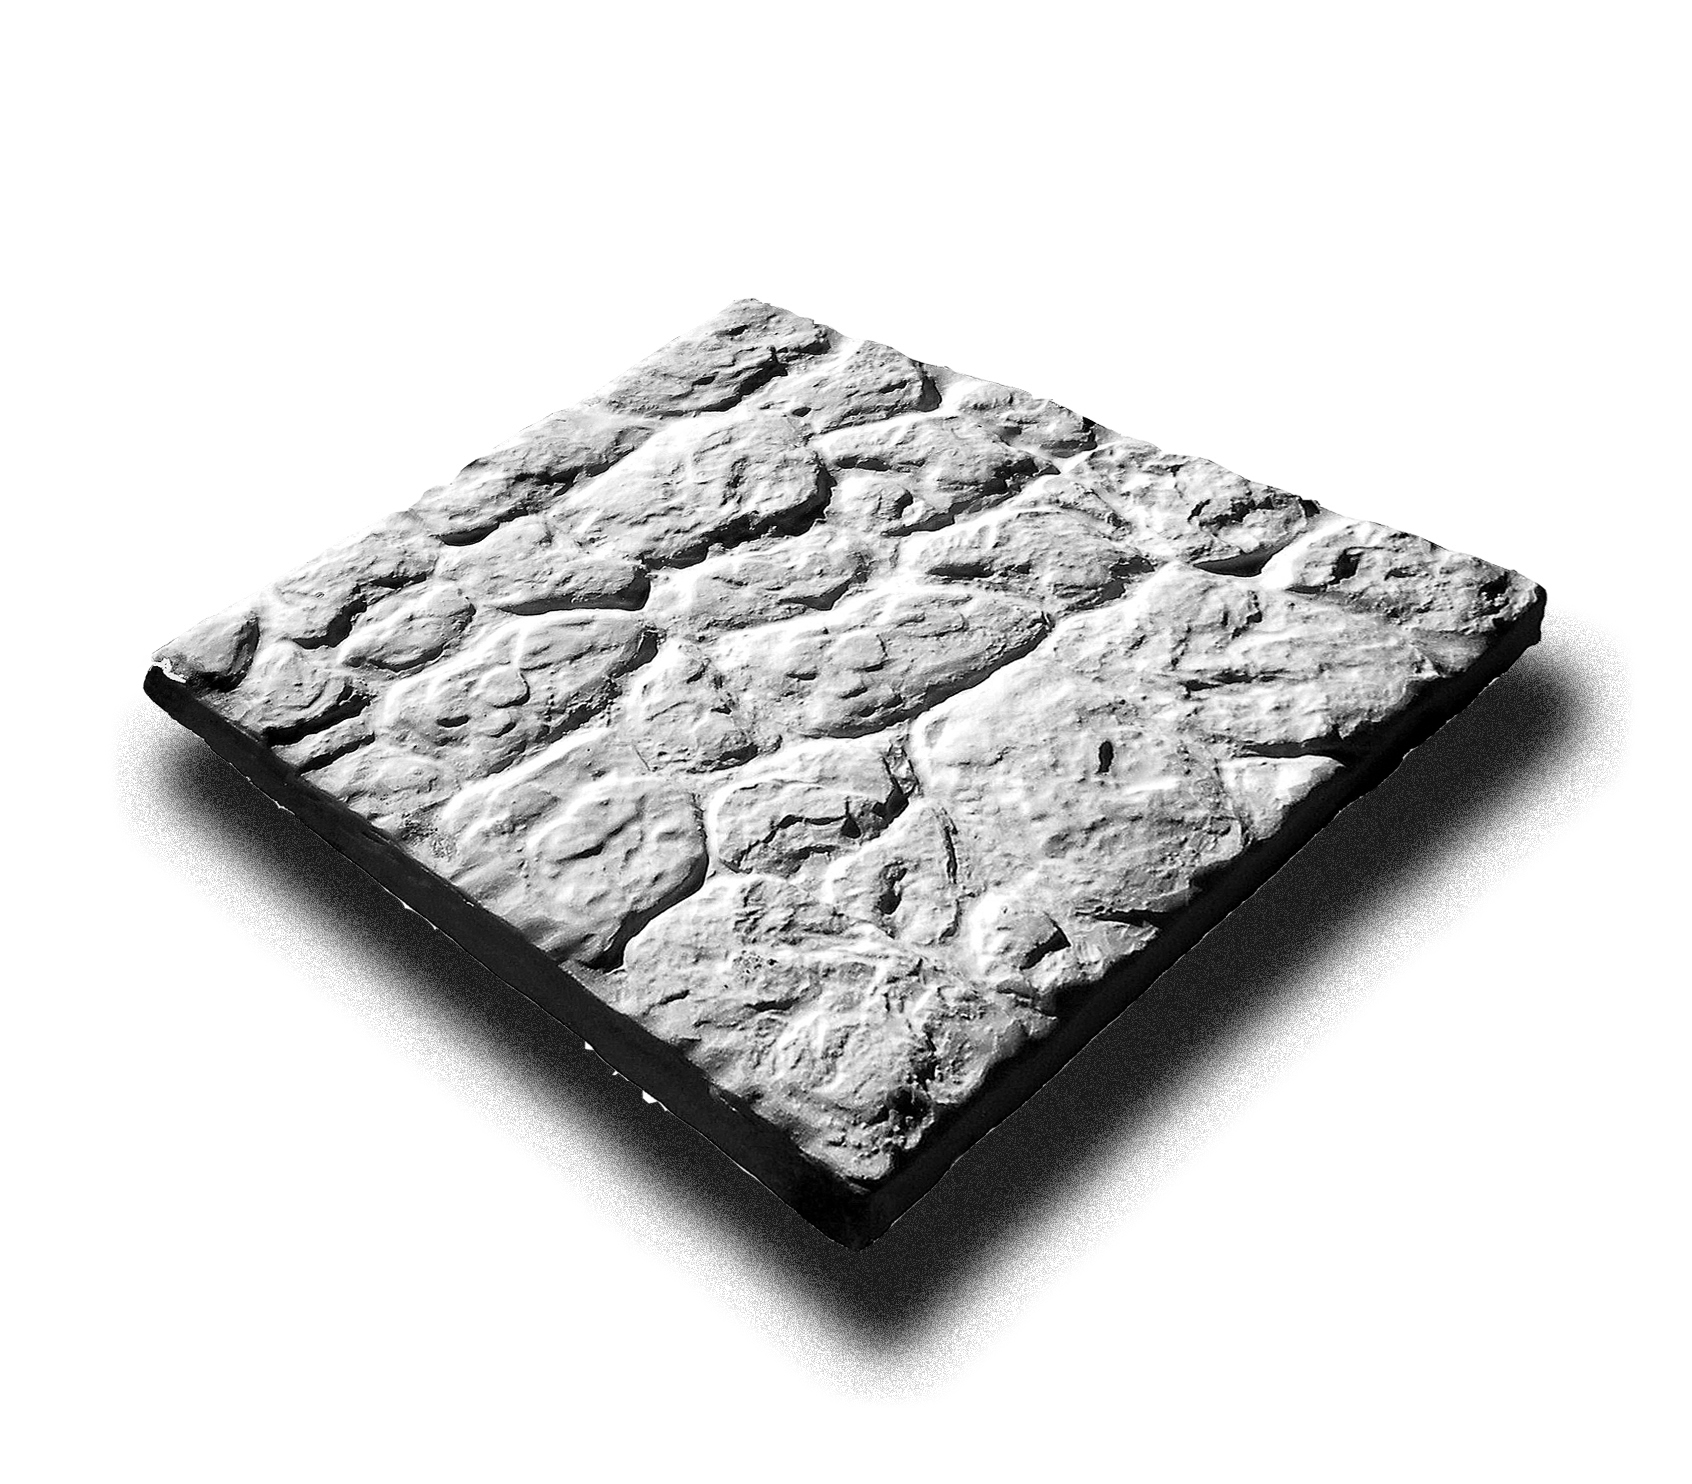 RAMO искусственный камень АЛЬТПЛАТЦ без окраски плитка тротуарная (бетон) 0,17м2/уп, RAMO искусственный камень АЛЬТПЛАТЦ без окраски плитка тротуарная (бетон) 0,17м2/уп